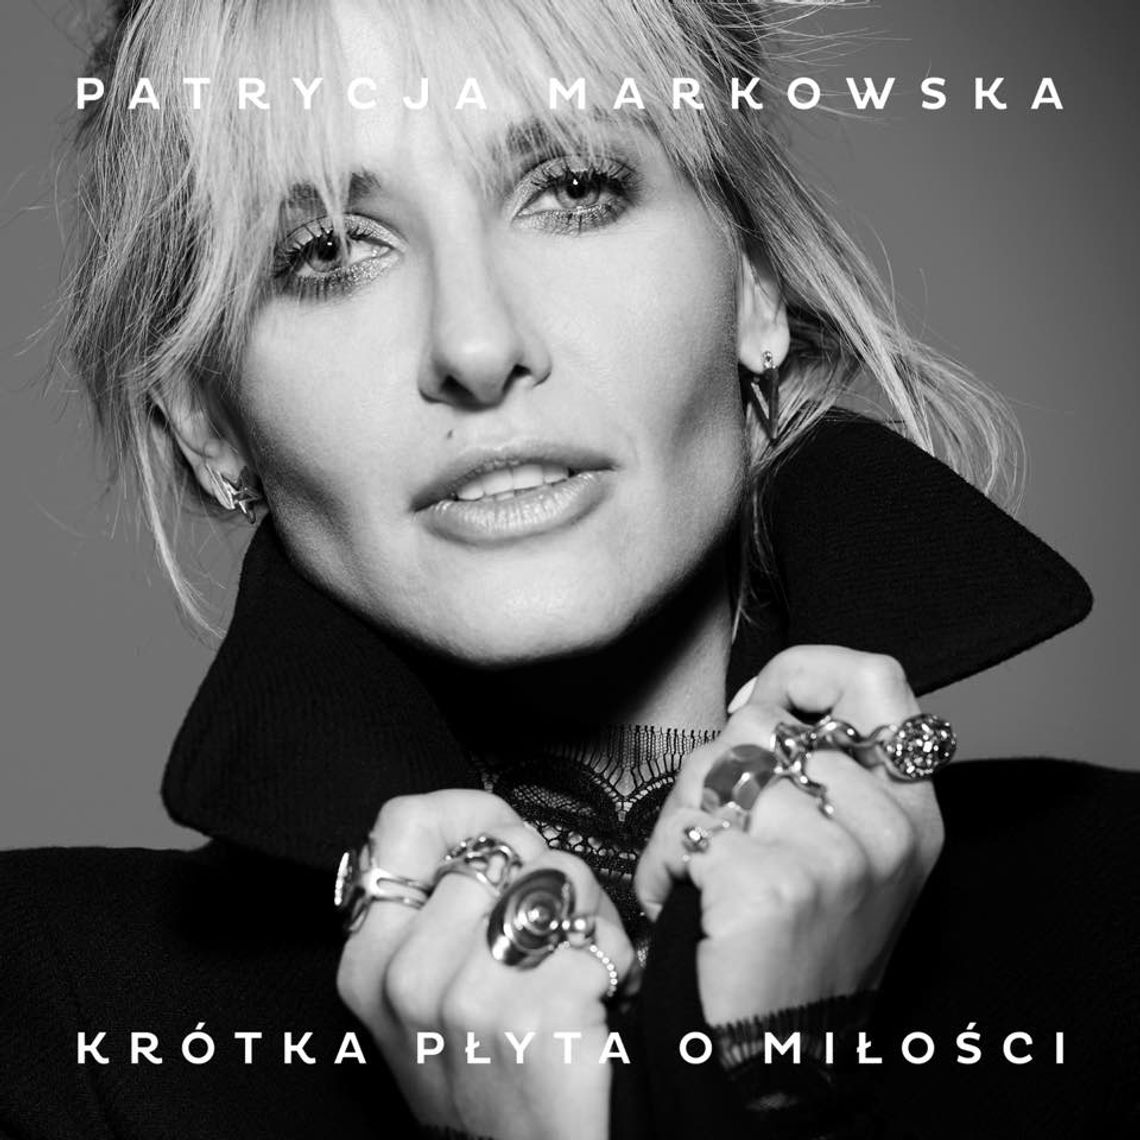 Płyta Tygodnia: Patrycja Markowska - Krótka płyta o miłości